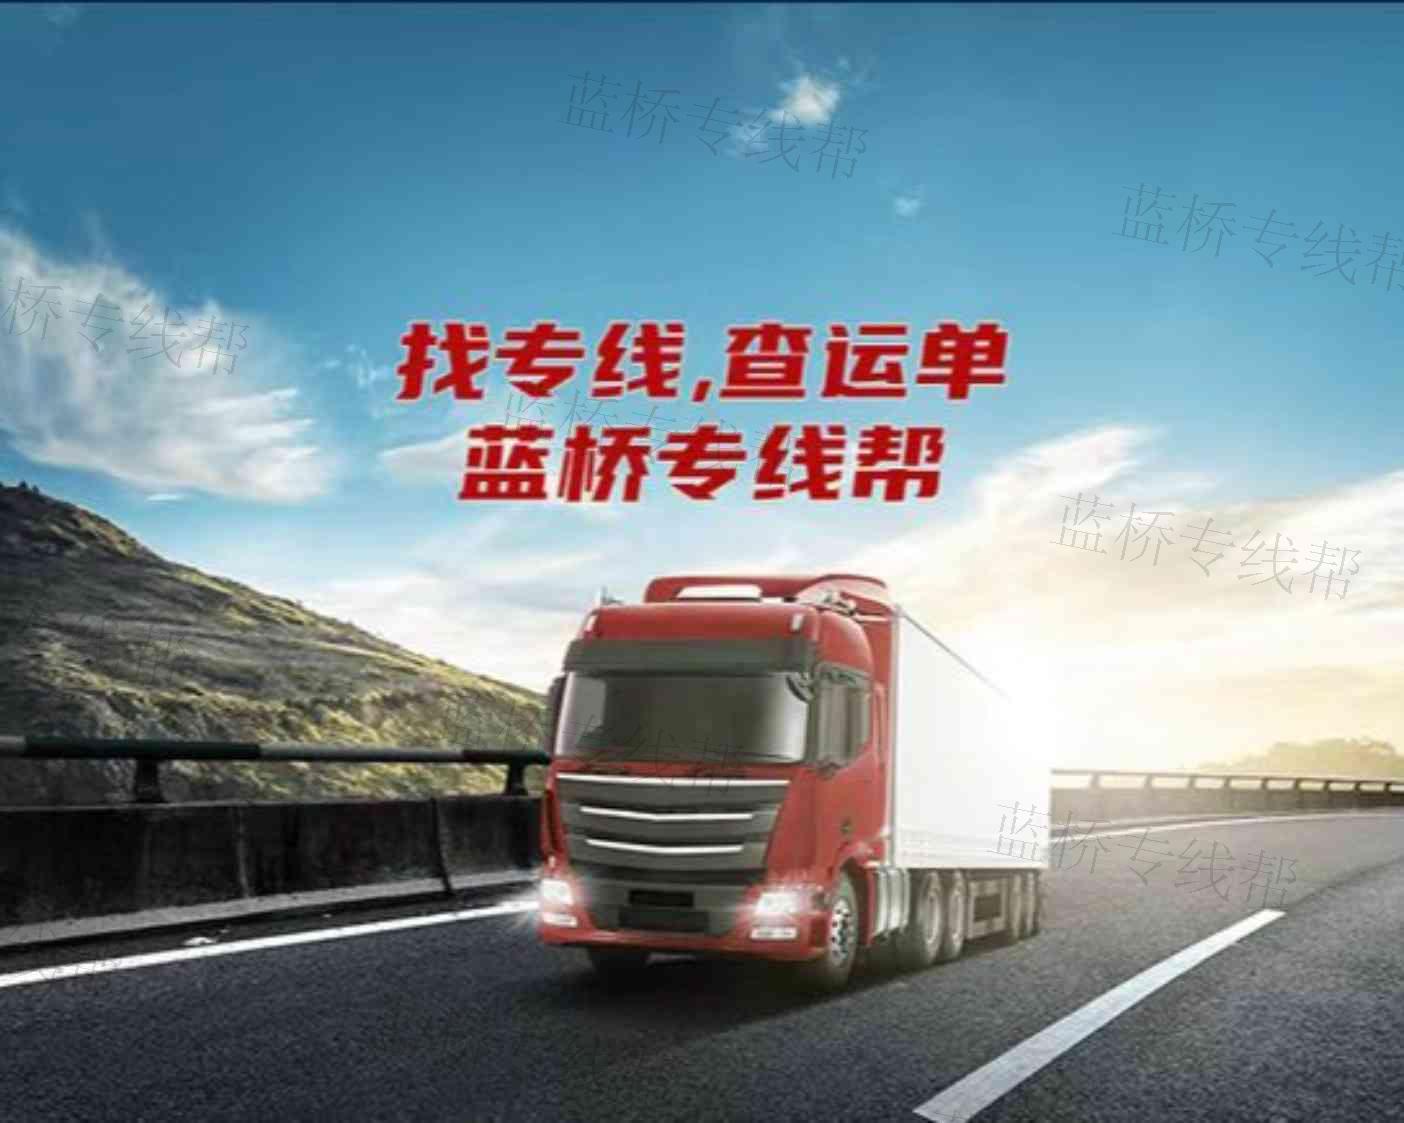 广州市远通快运供应链管理有限公司